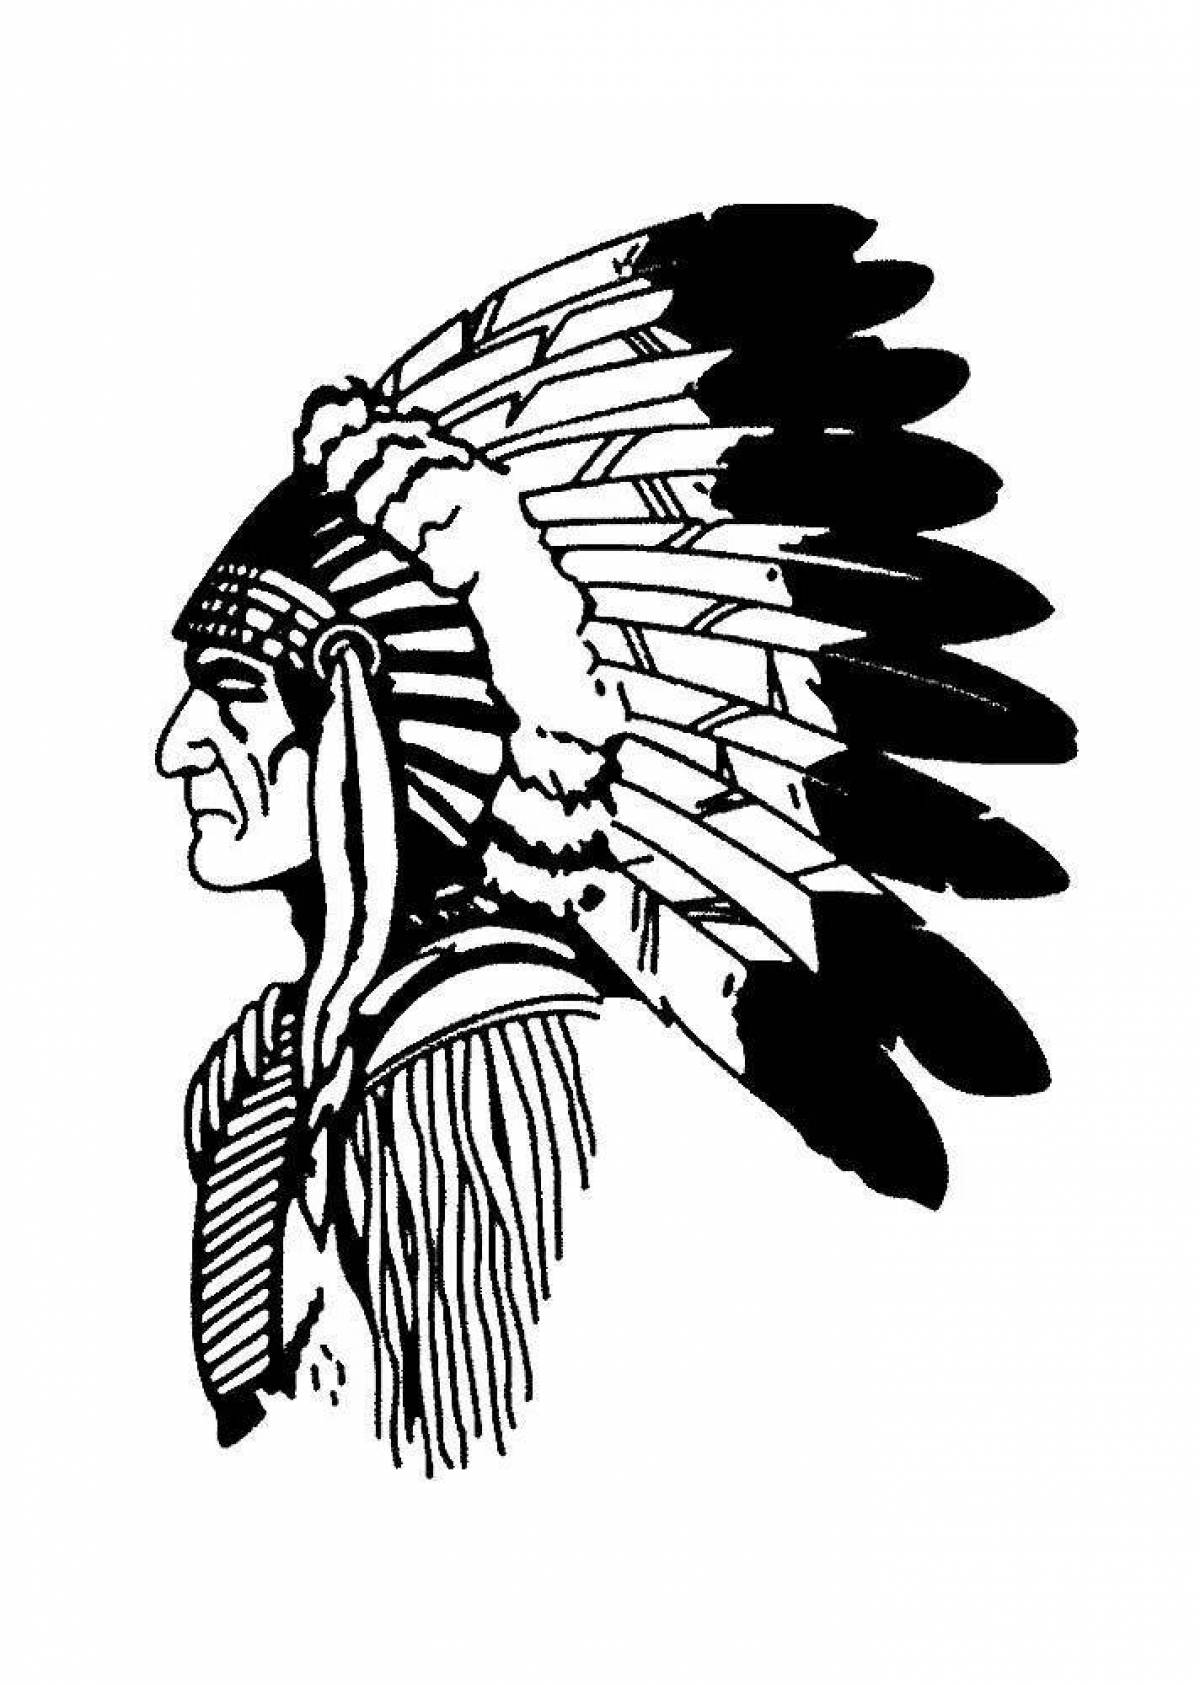 Герб индейца. Индеец Апачи в профиль. Черный ястреб индейский вождь. Тату индейцев Апачи.